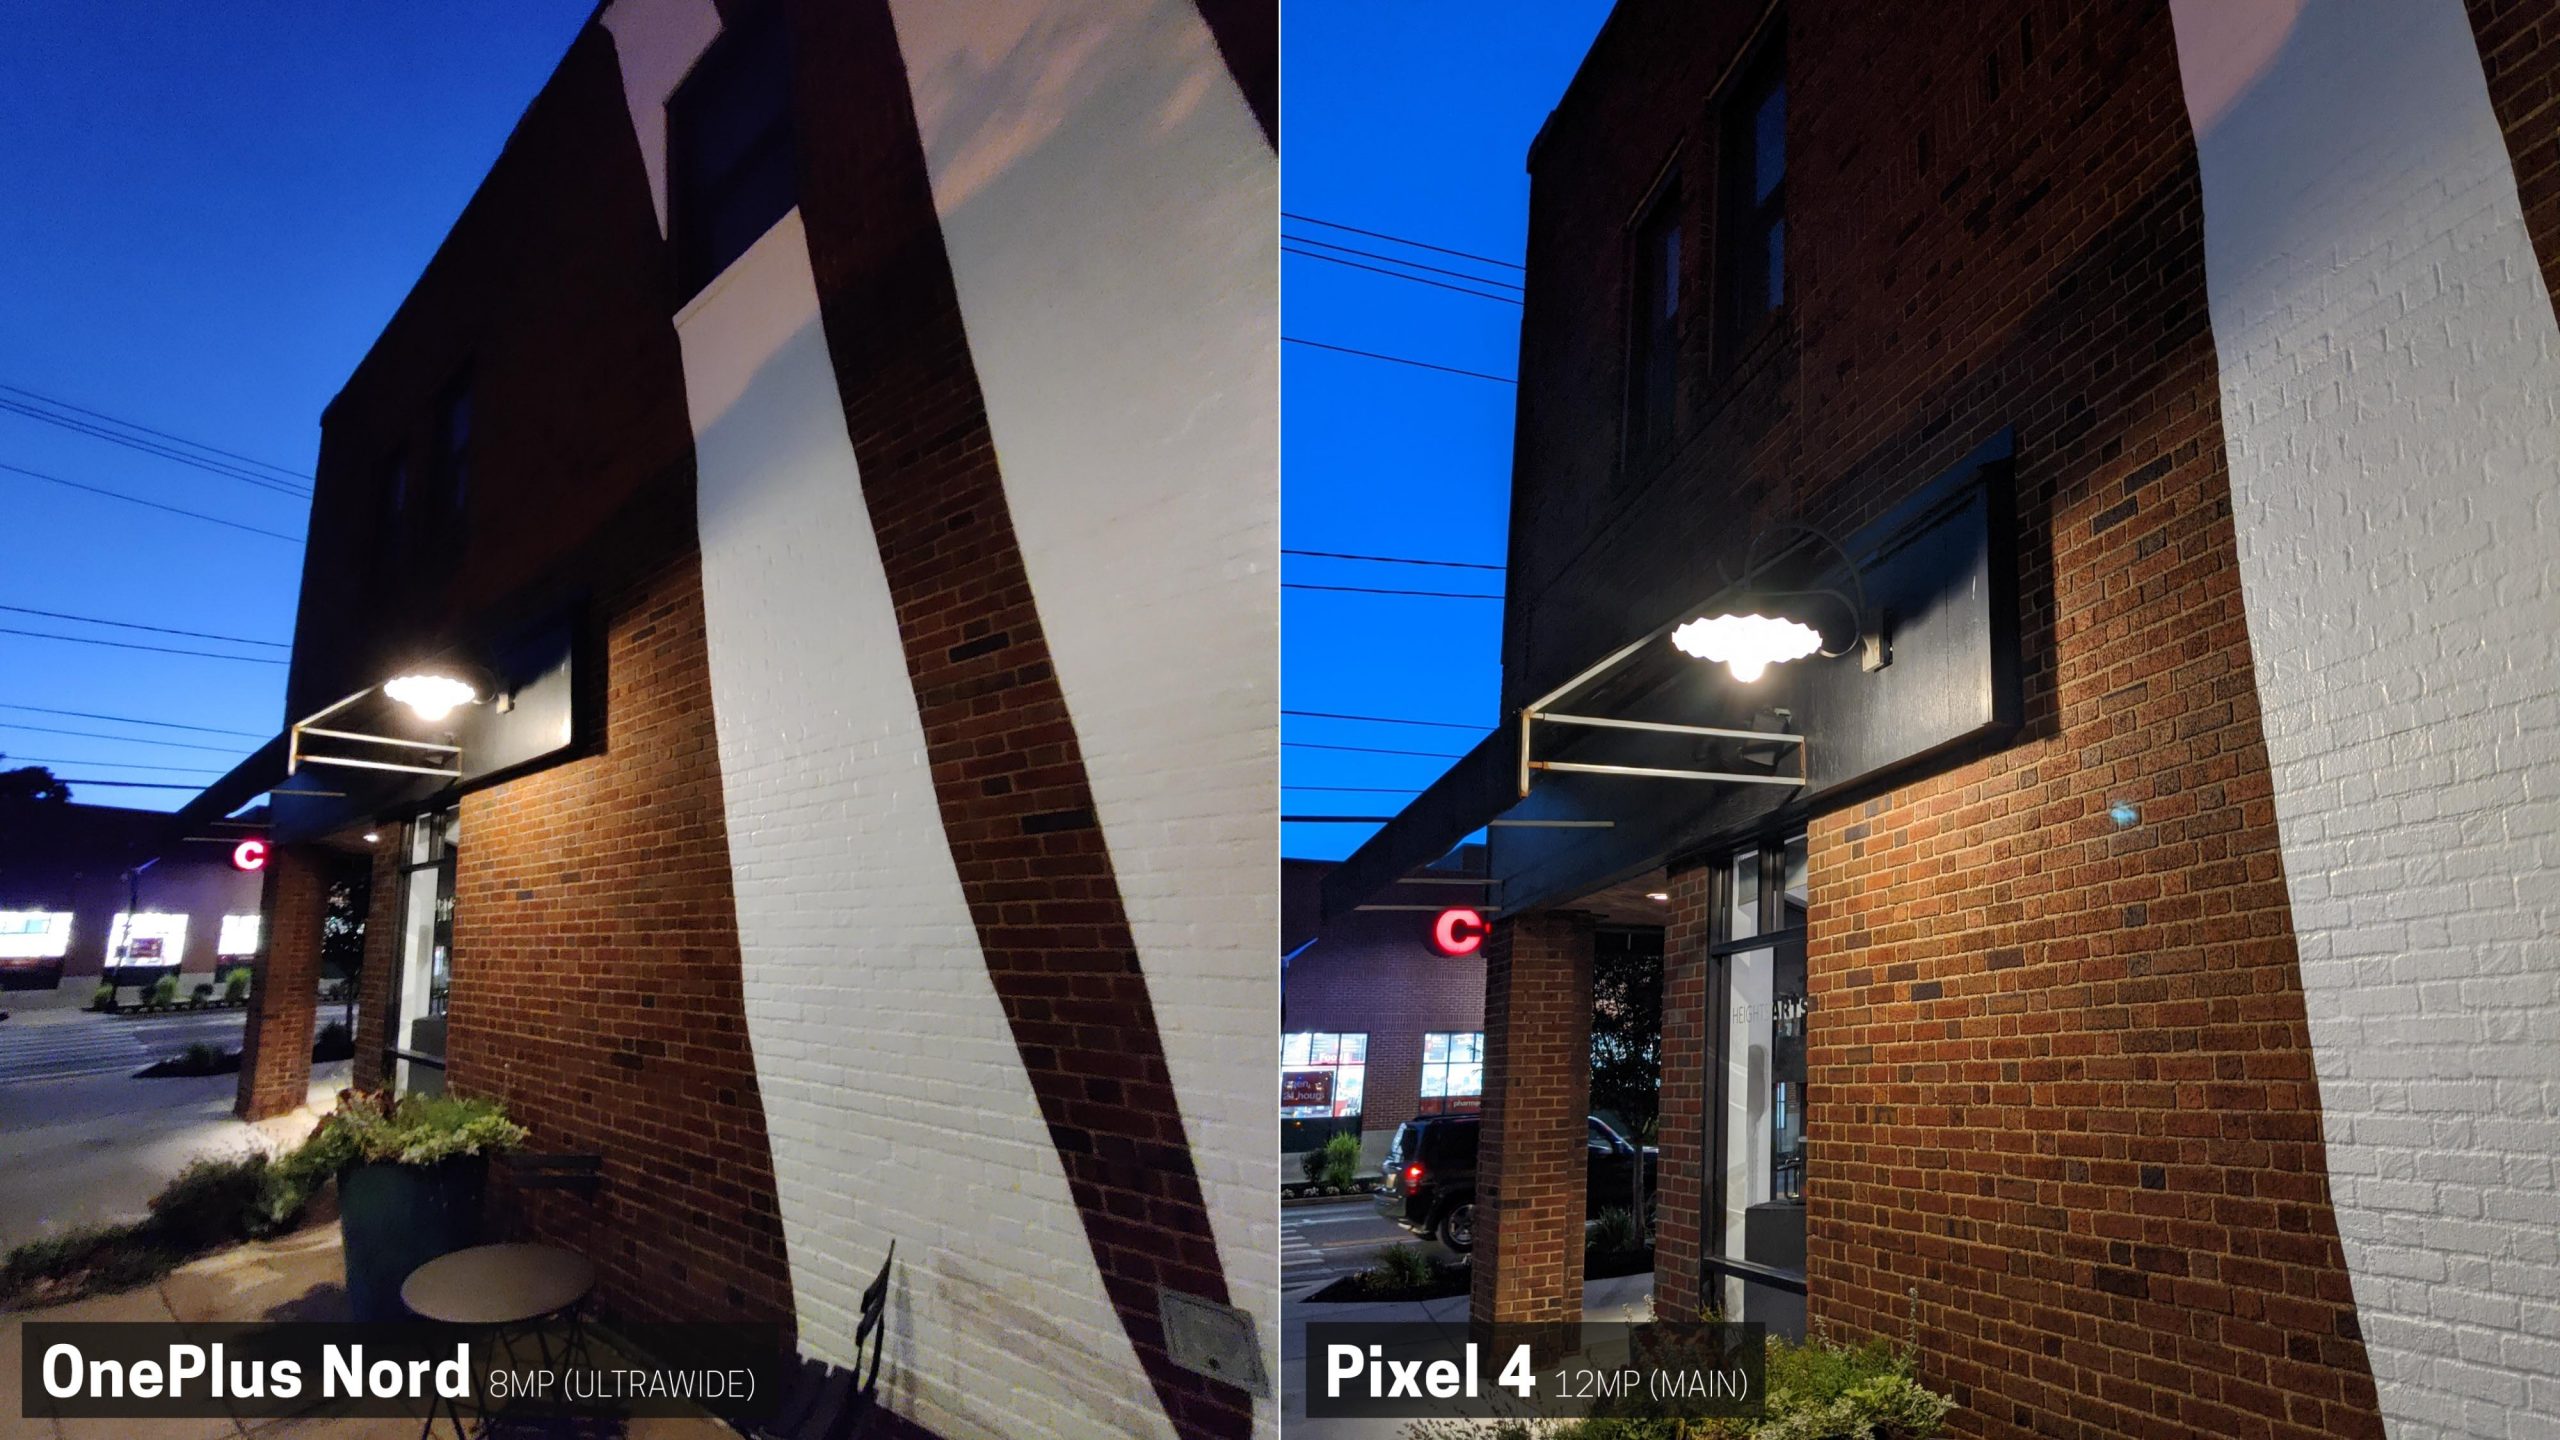 Pixel 4 melenyapkan OnePlus Nord dalam perbandingan kamera 37